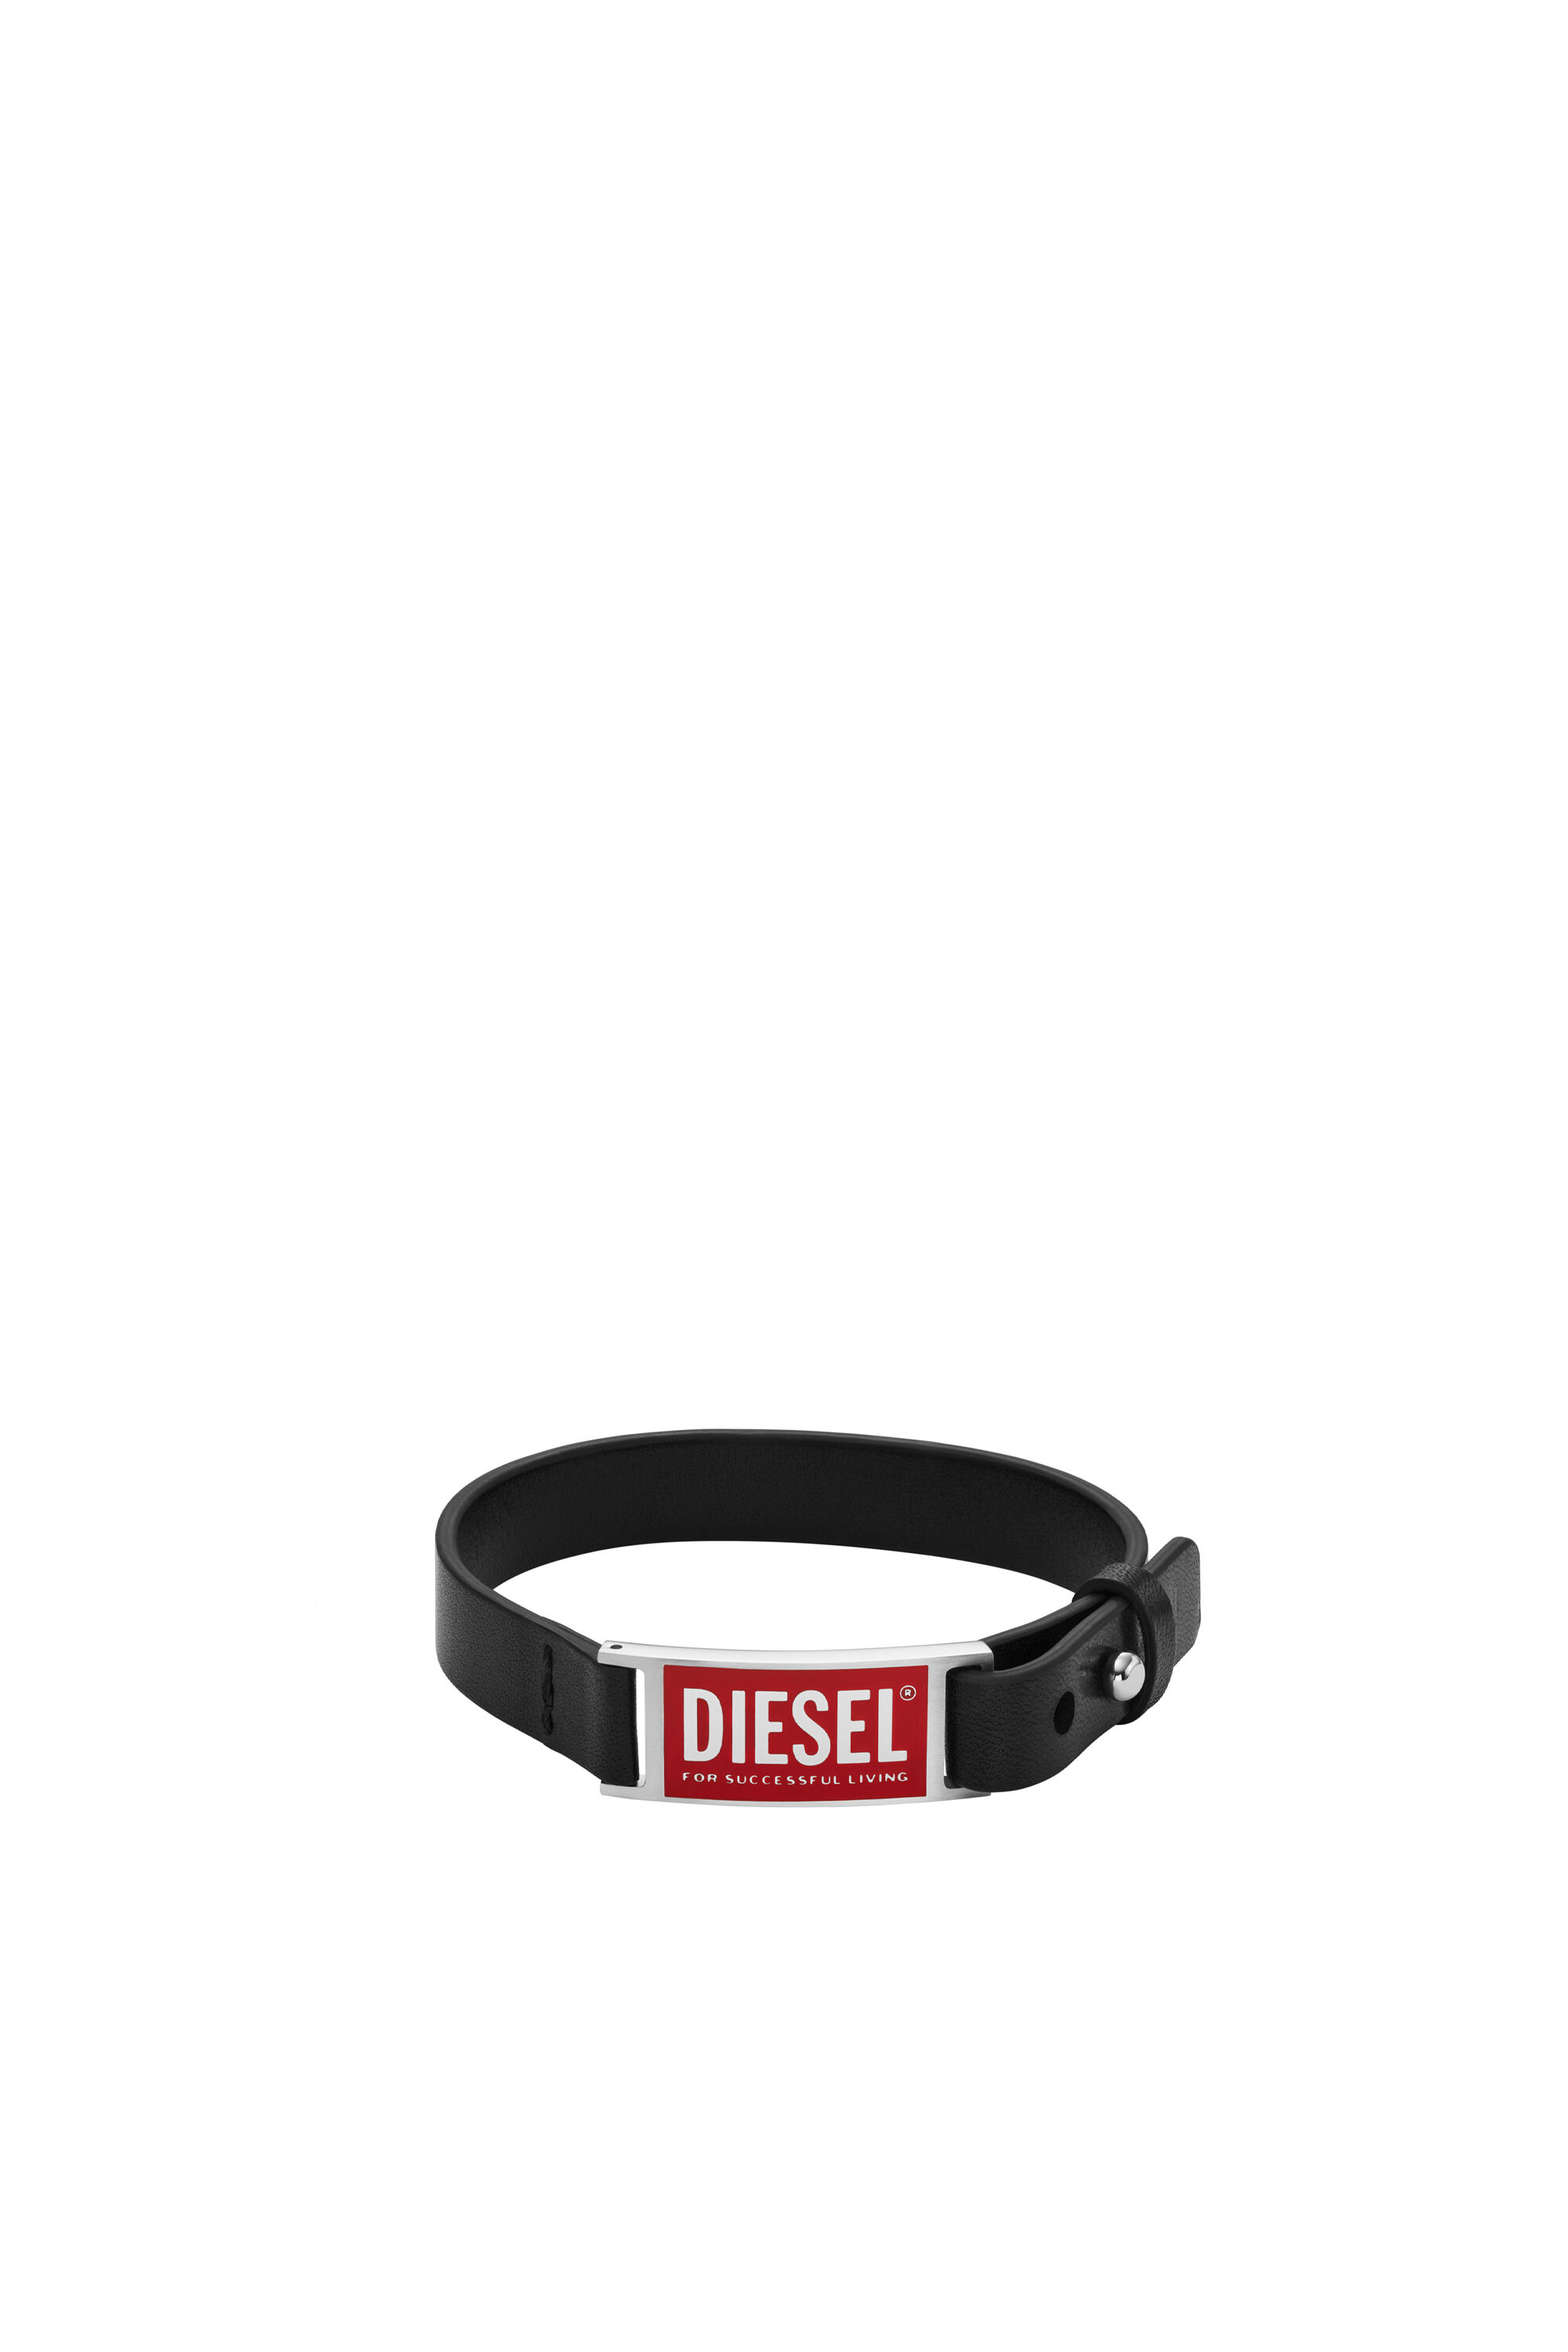 Diesel - DX1370, Black - Image 1